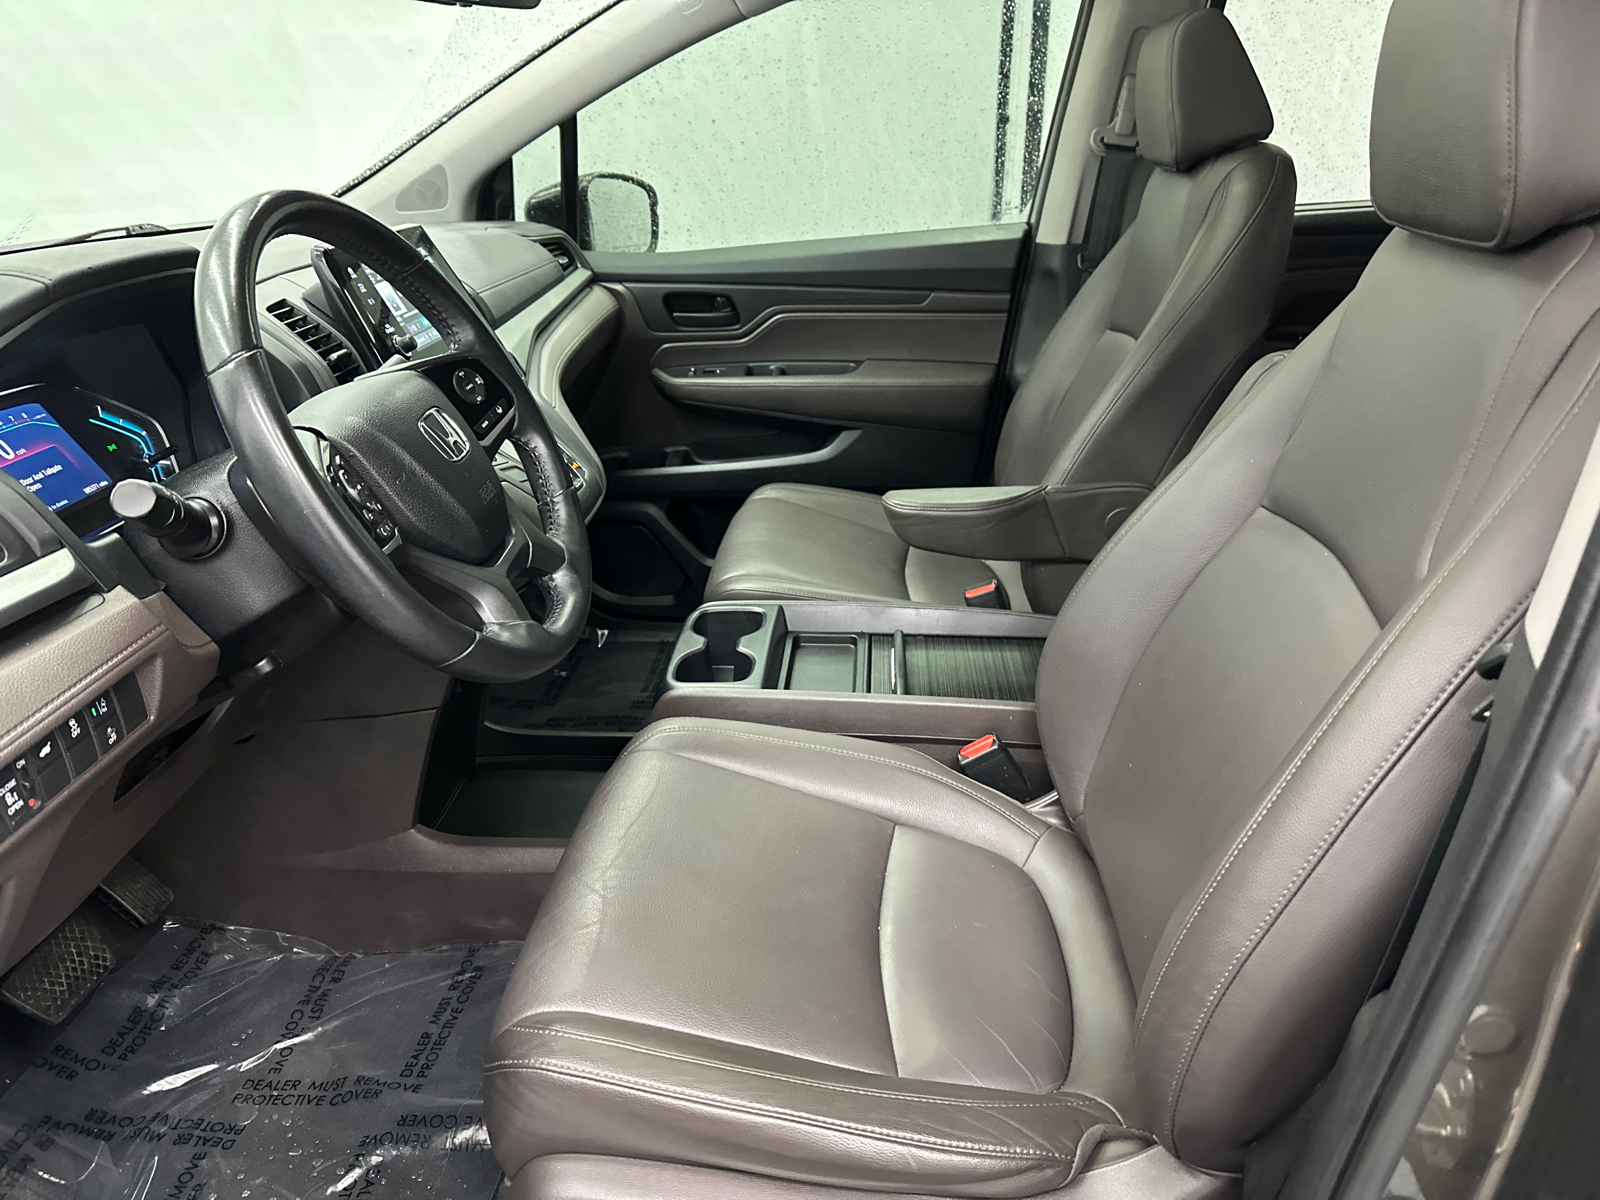 2019 Honda Odyssey EX-L 9